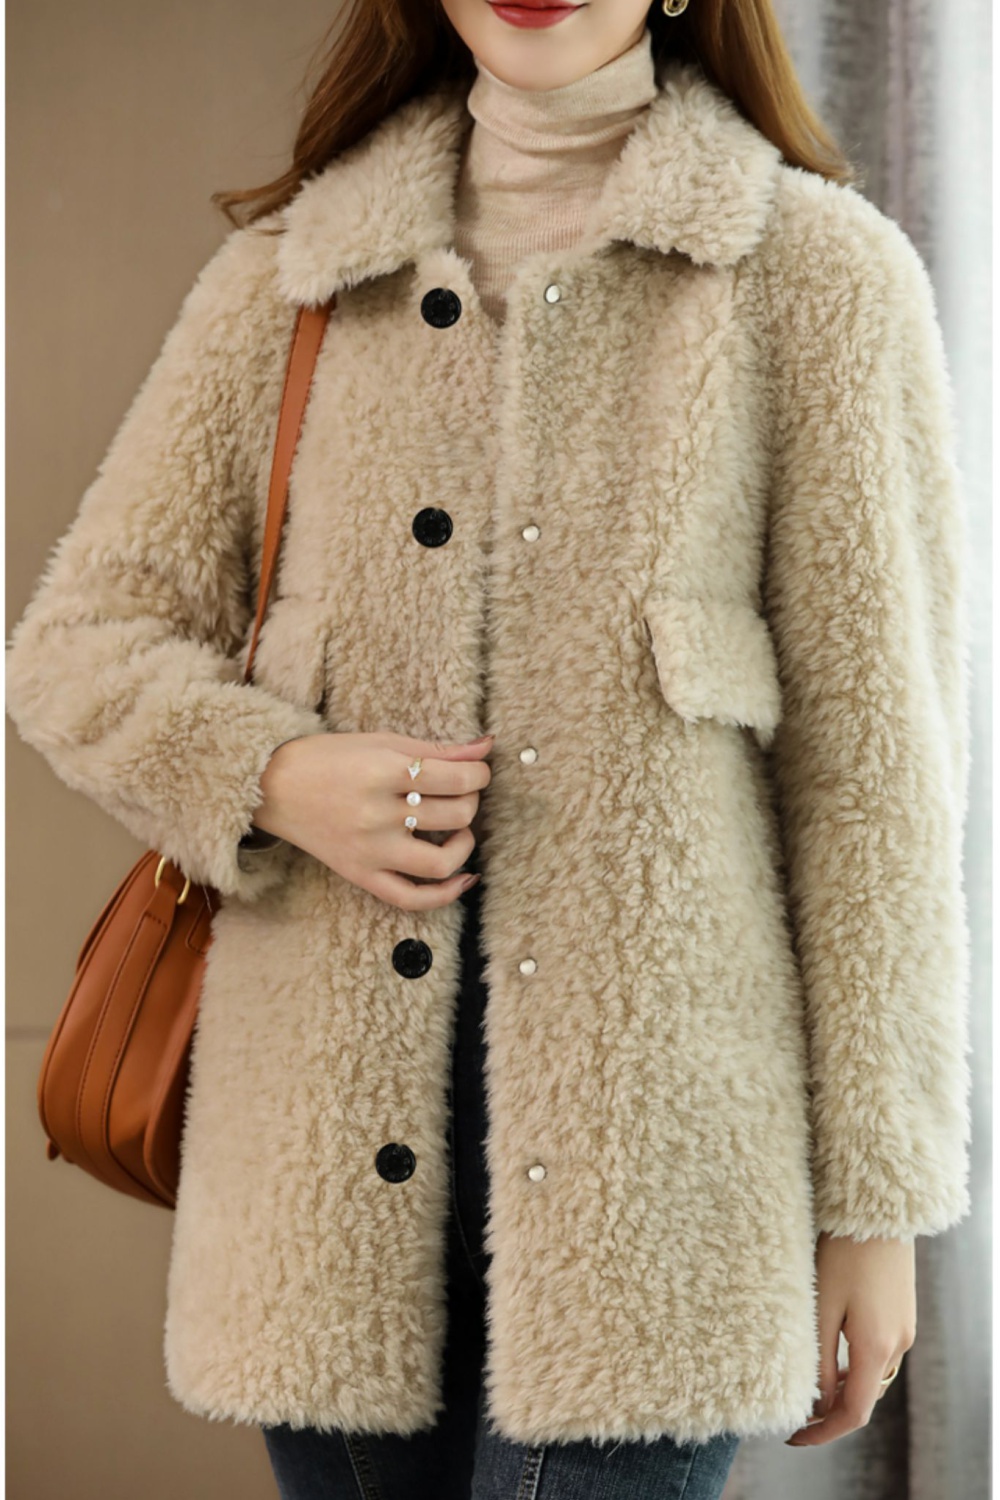 Lambs wool long fur coat winter coat